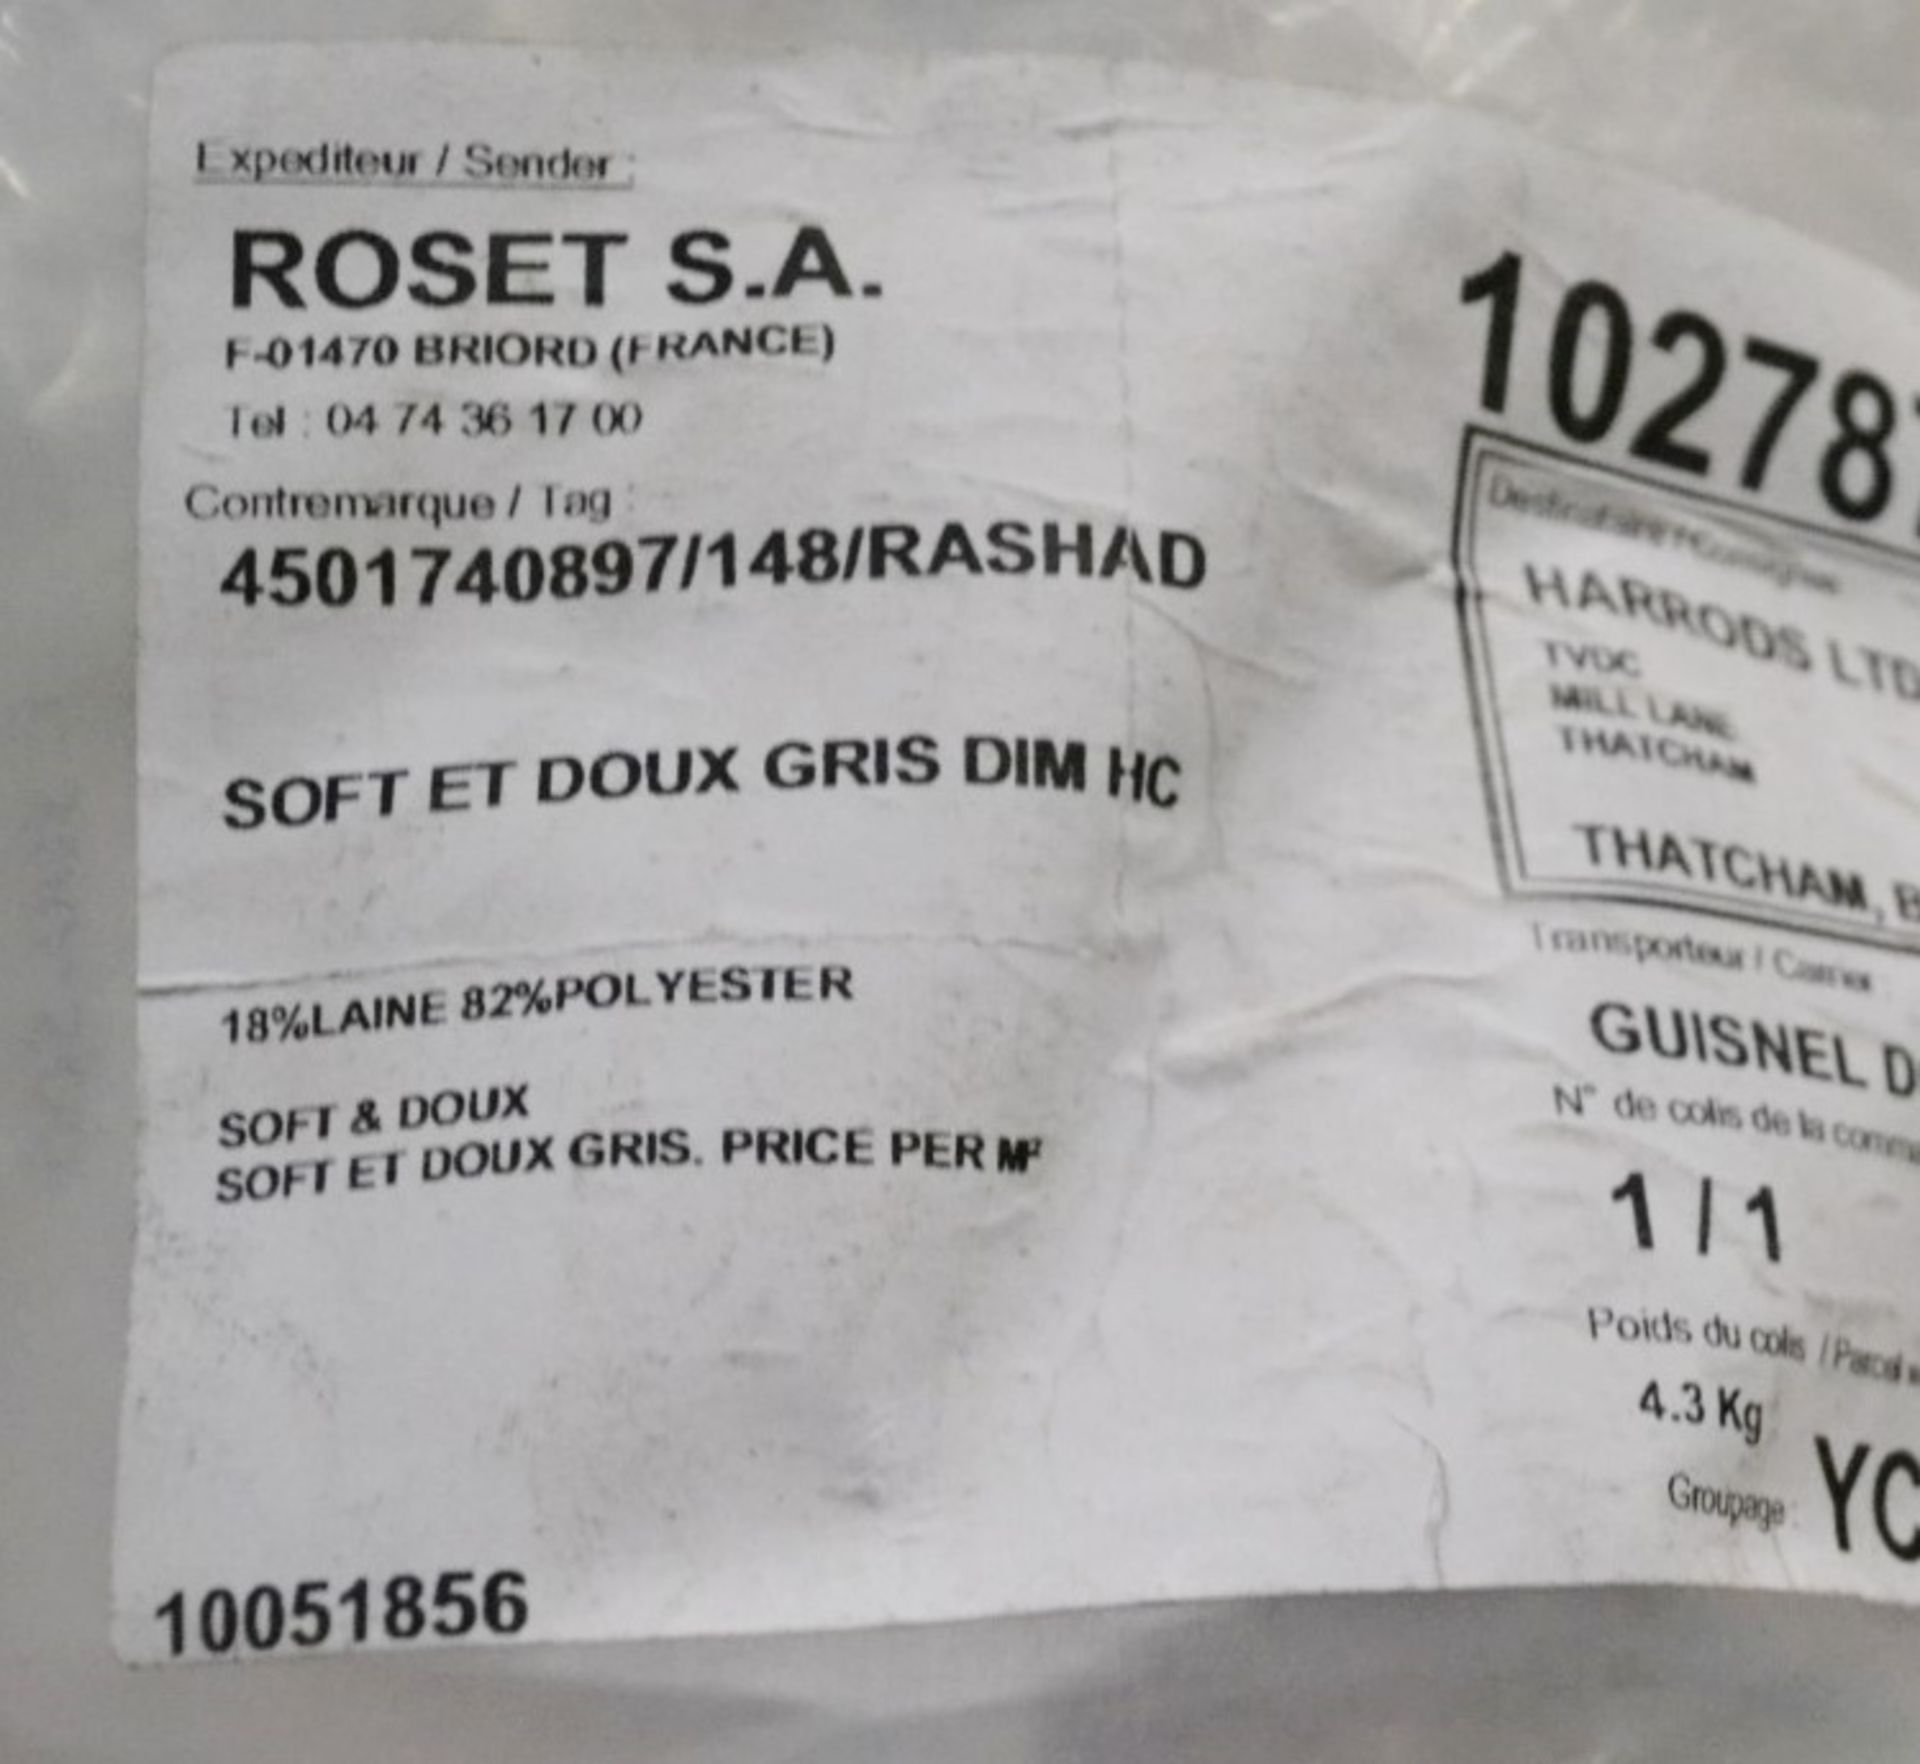 1 x Ligne Roset Soft Et Doux Rug - Dimensions: 200x200cm - Ref: 5088558 - CL087 - Location: - Image 5 of 5